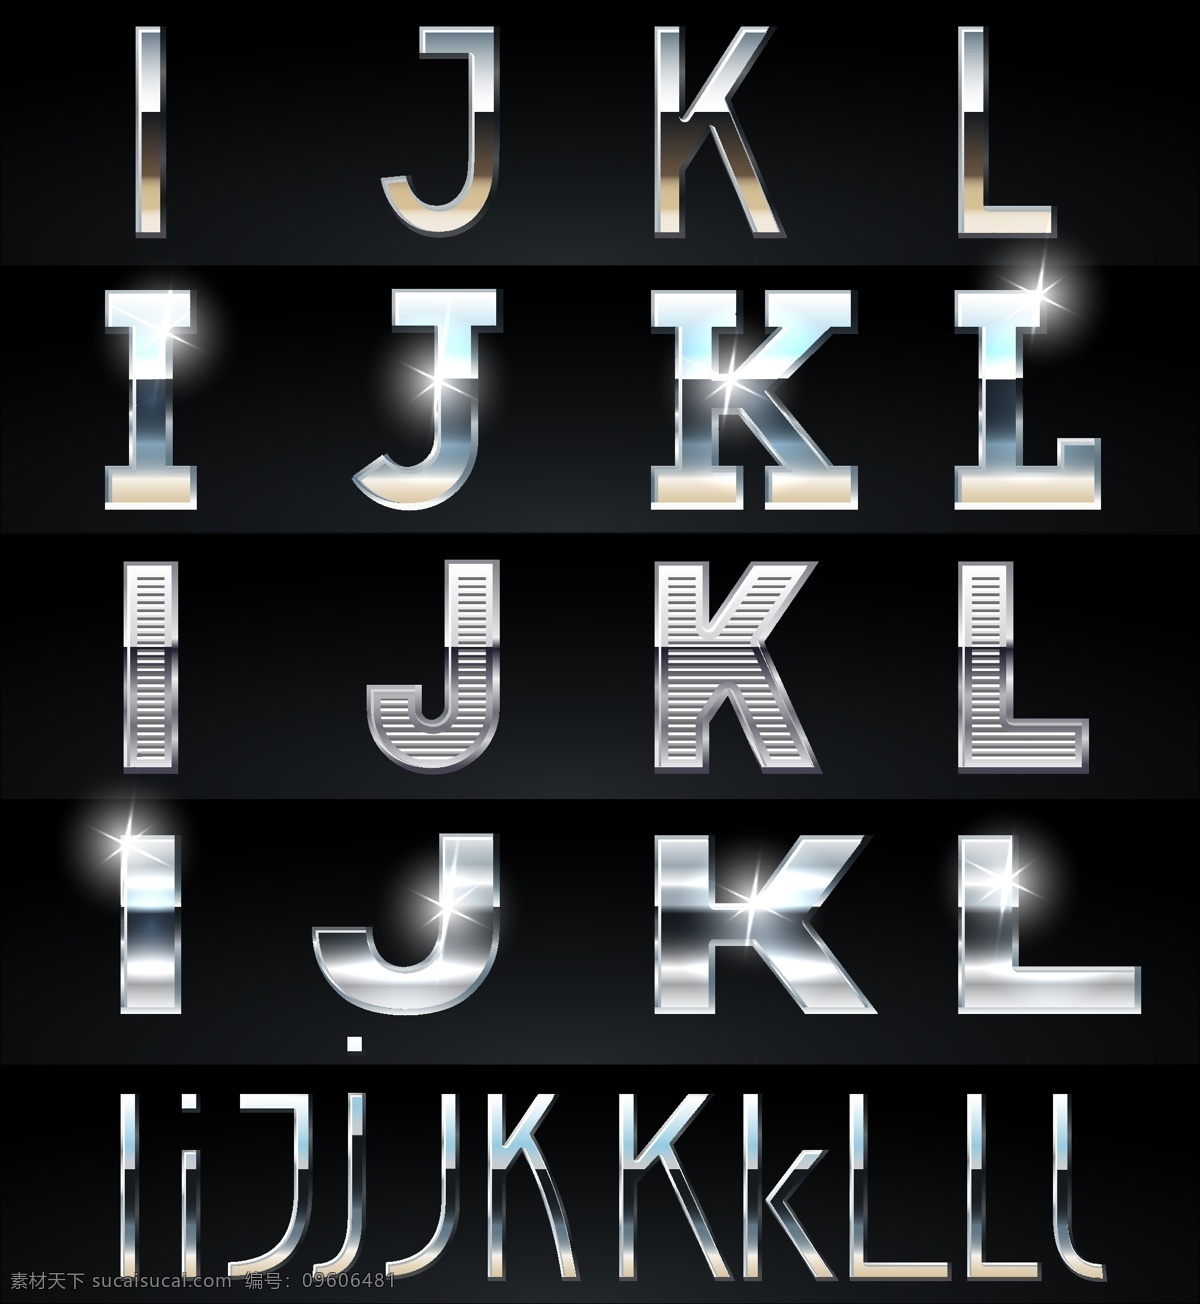 字体设计 抽象 图形 创意 艺术 设计素材 矢量 金属 质感 样式 字体 字母 英文 高光 流行元素 底纹边框 矢量素材 黑色